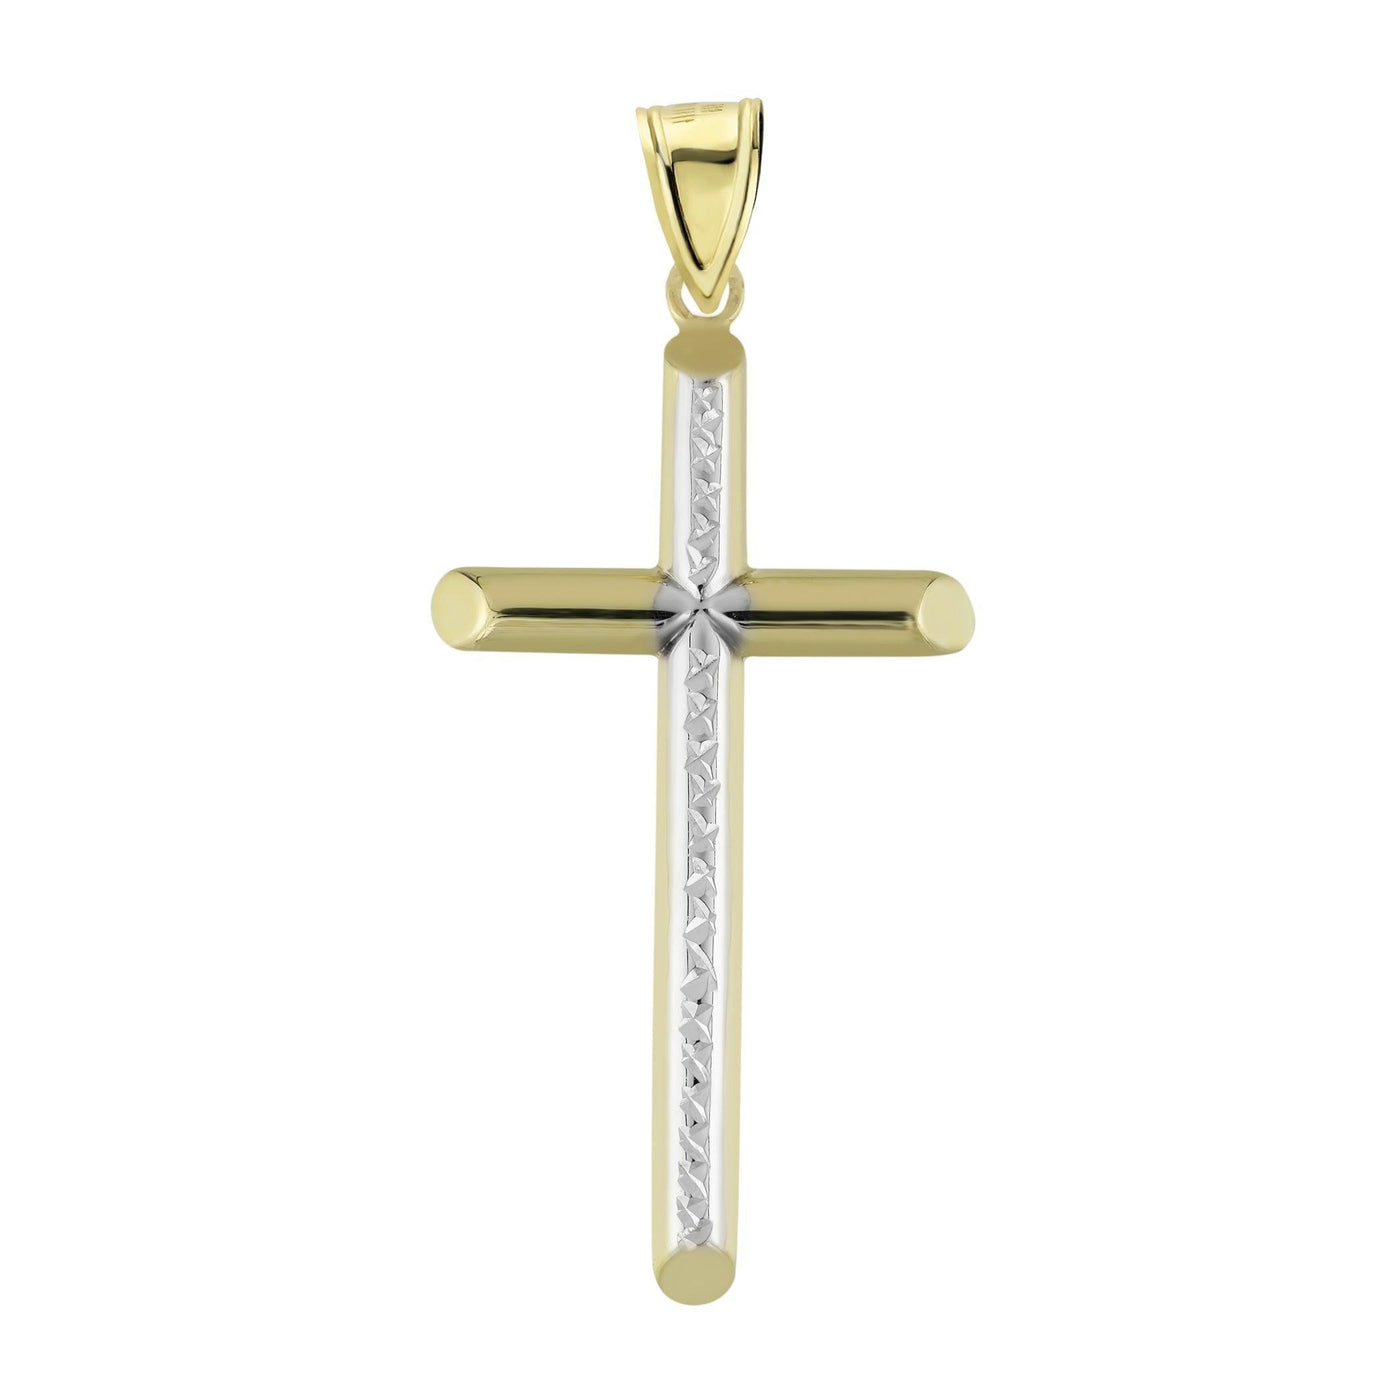 2 1/4" Cross Diamond Cut Two-Tone Tube Charm Pendant 10K Yellow Gold - bayamjewelry